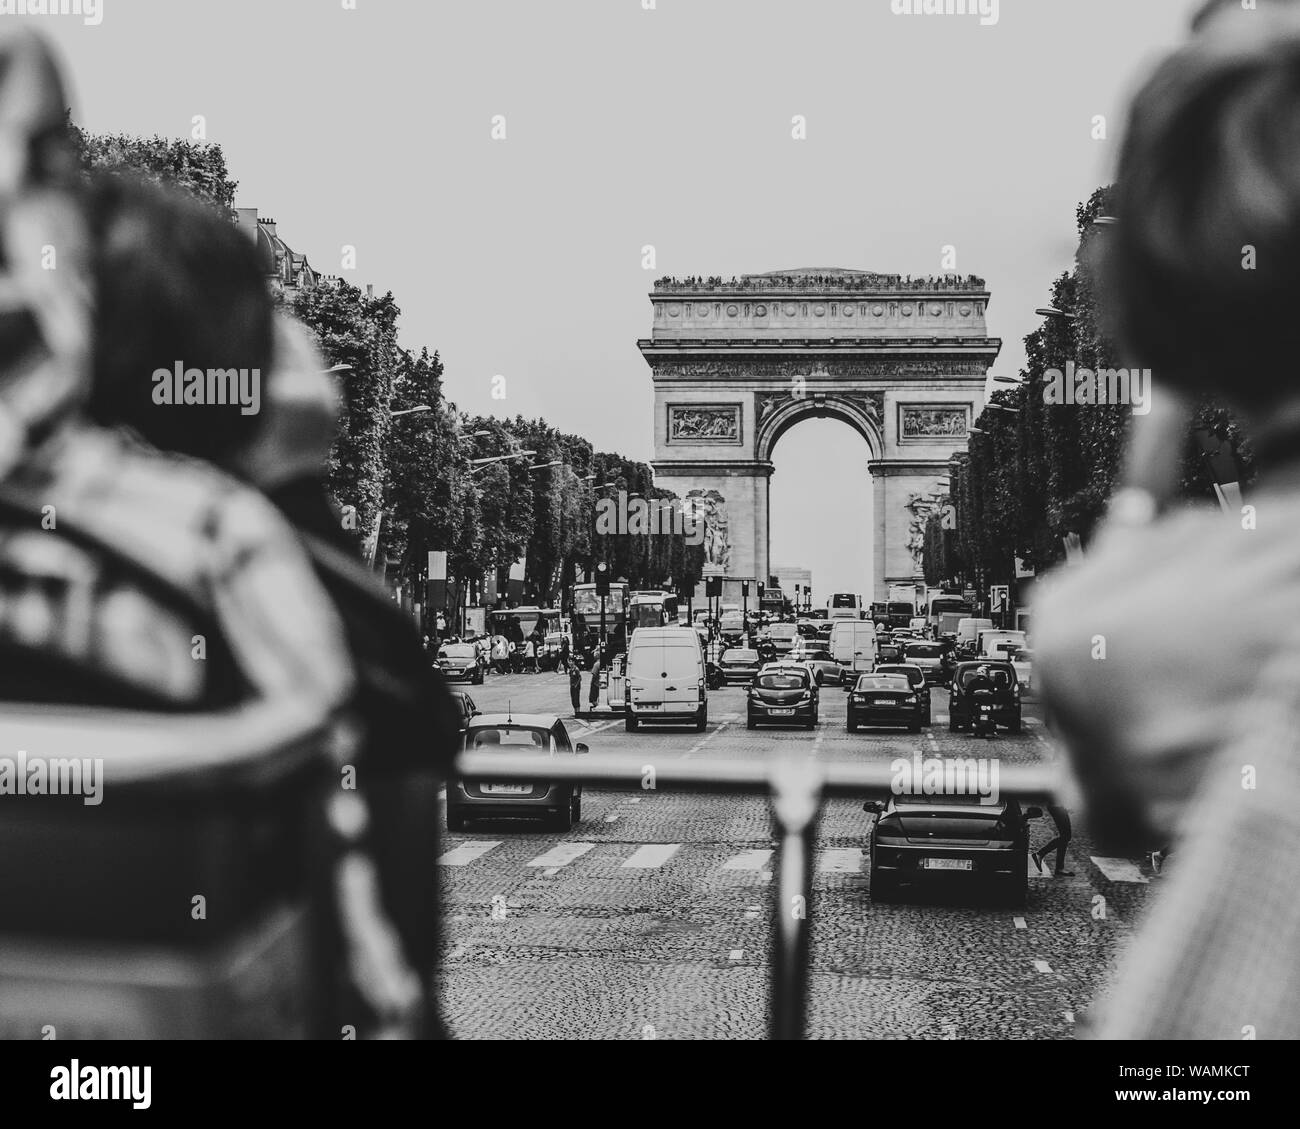 Tolle Aussicht von City tour bus Fahrt durch die Champs Elysee Avenue an einem schönen sonnigen Tag in Richtung Triumphbogen. Schwarz und Weiß Foto Stockfoto